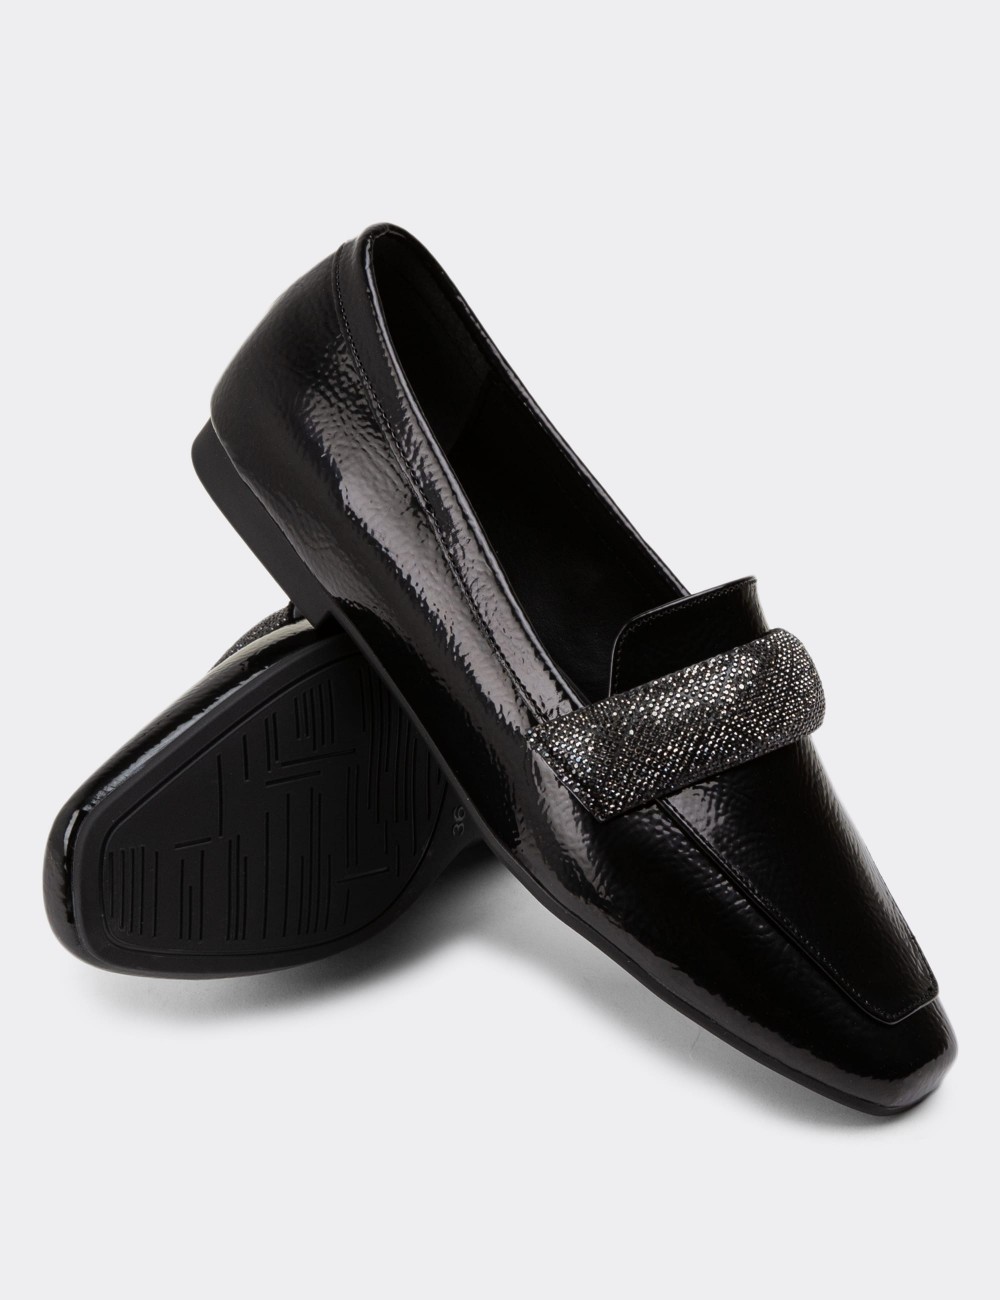 Black Patent Loafers - K1112ZSYHC01